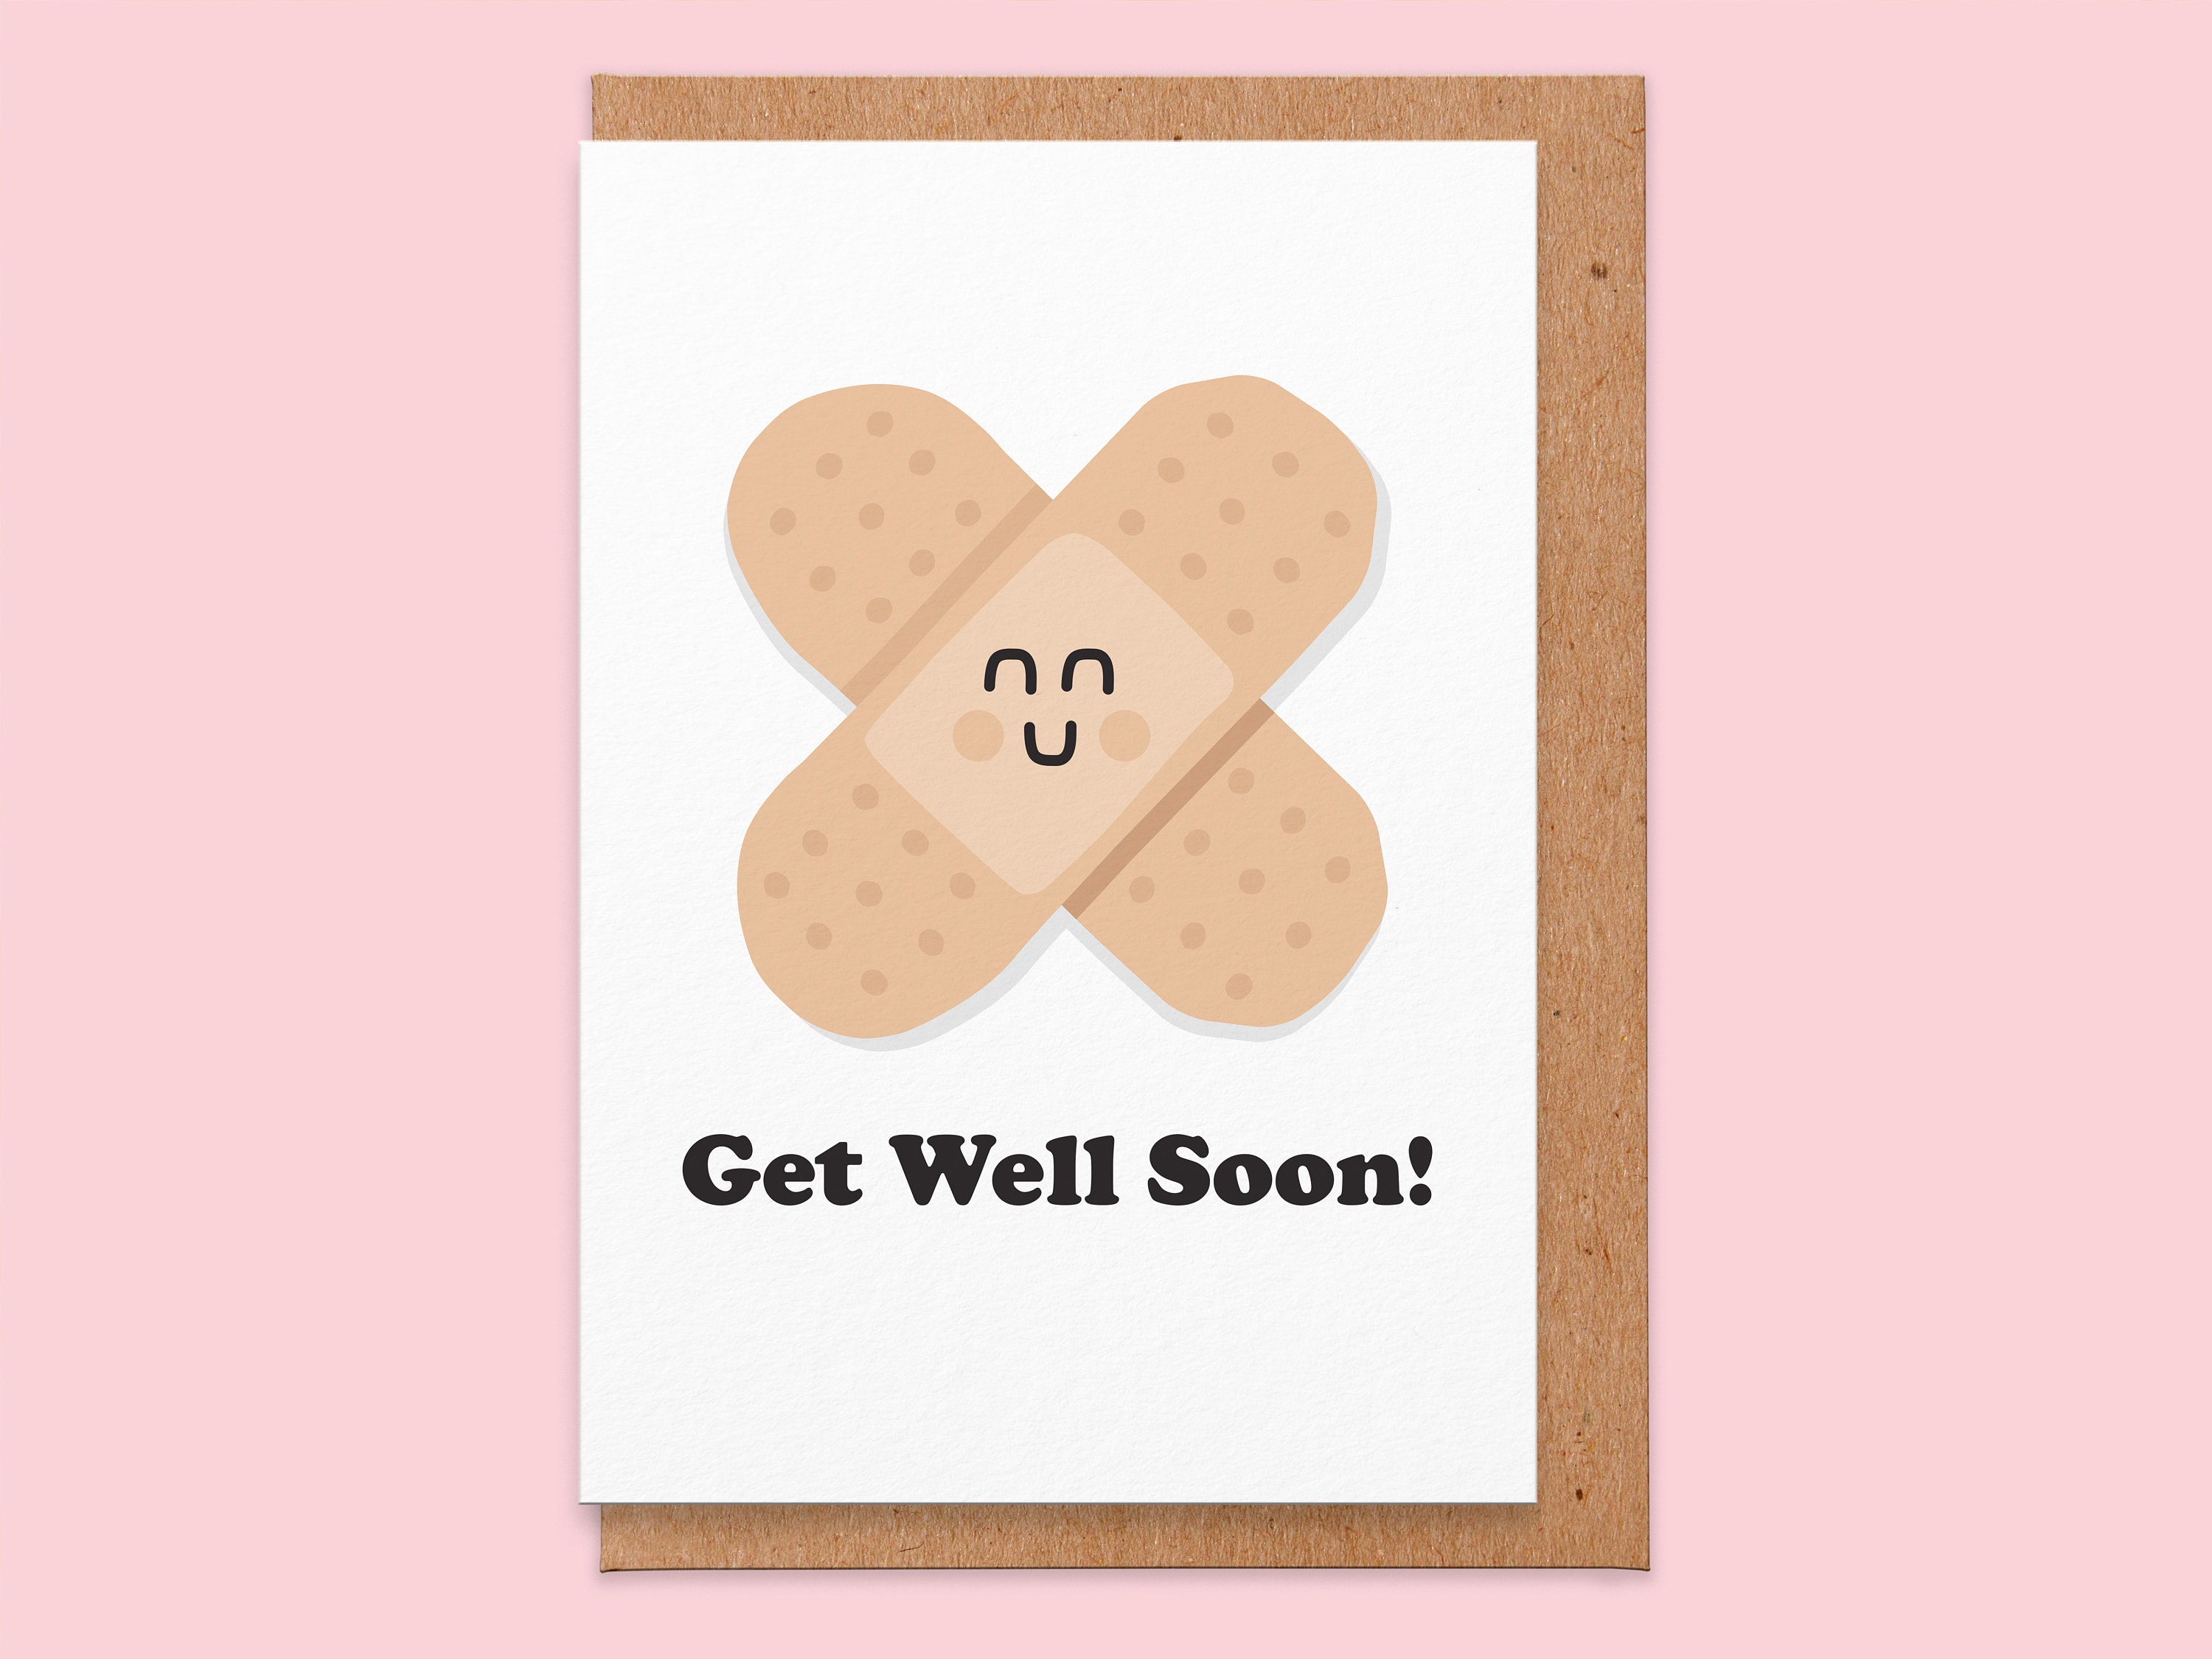 Get Well Soon Bestie Bears Clip Art - Exclusive Graphics - Graphics Dollar